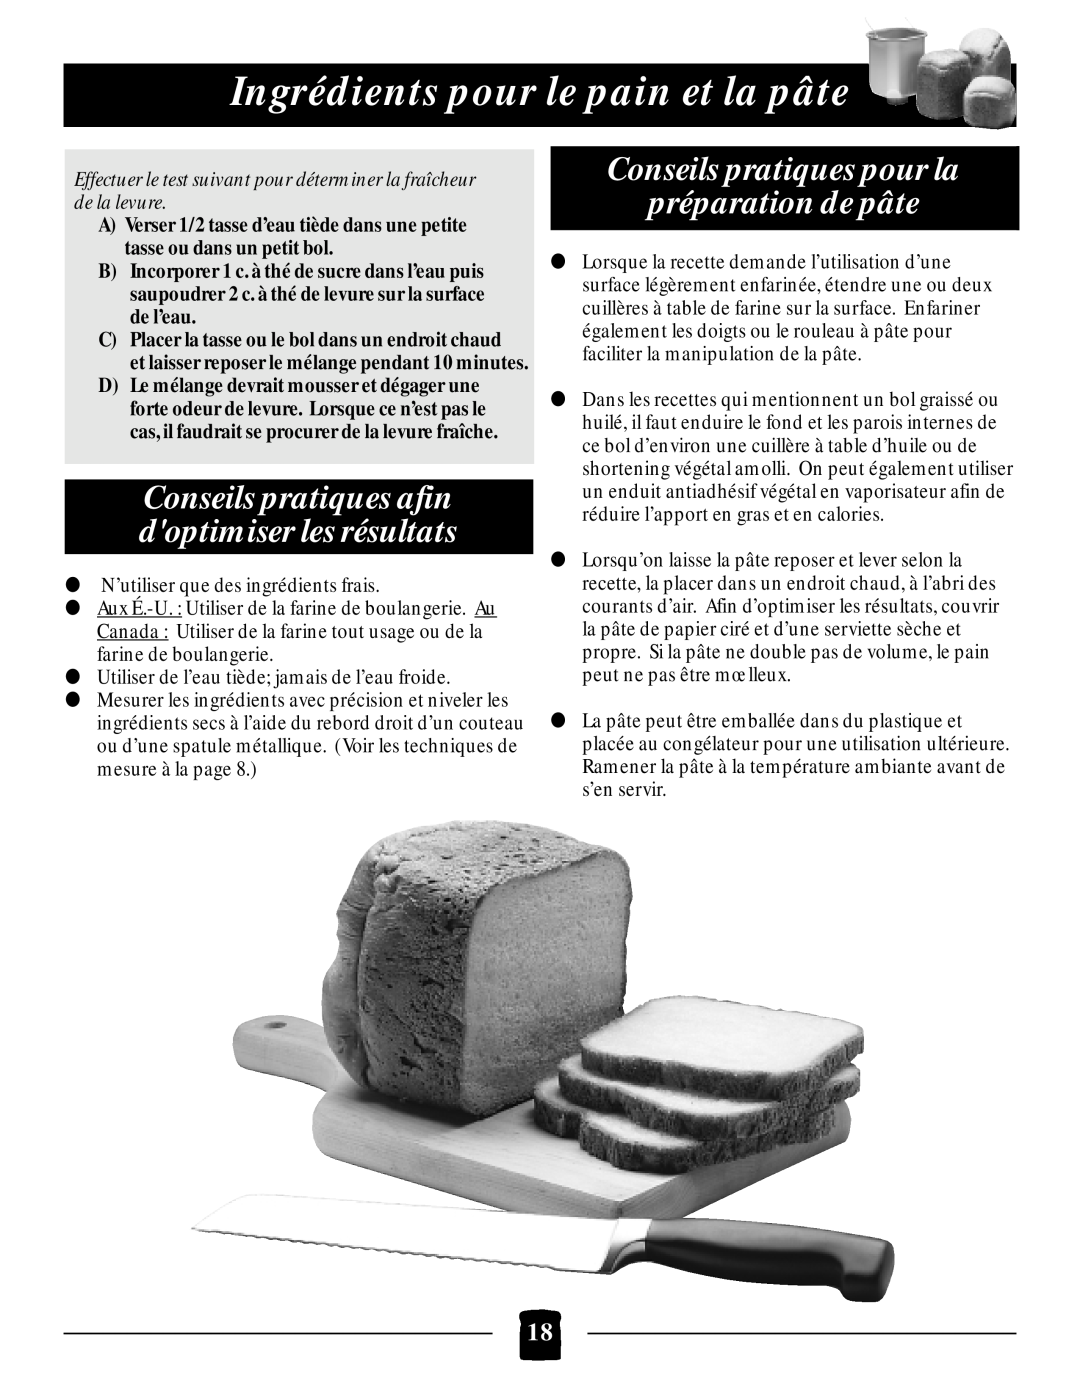 Black & Decker B1650 Conseils pratiques afin doptimiser les résultats, Conseils pratiques pour la préparation de pâte 